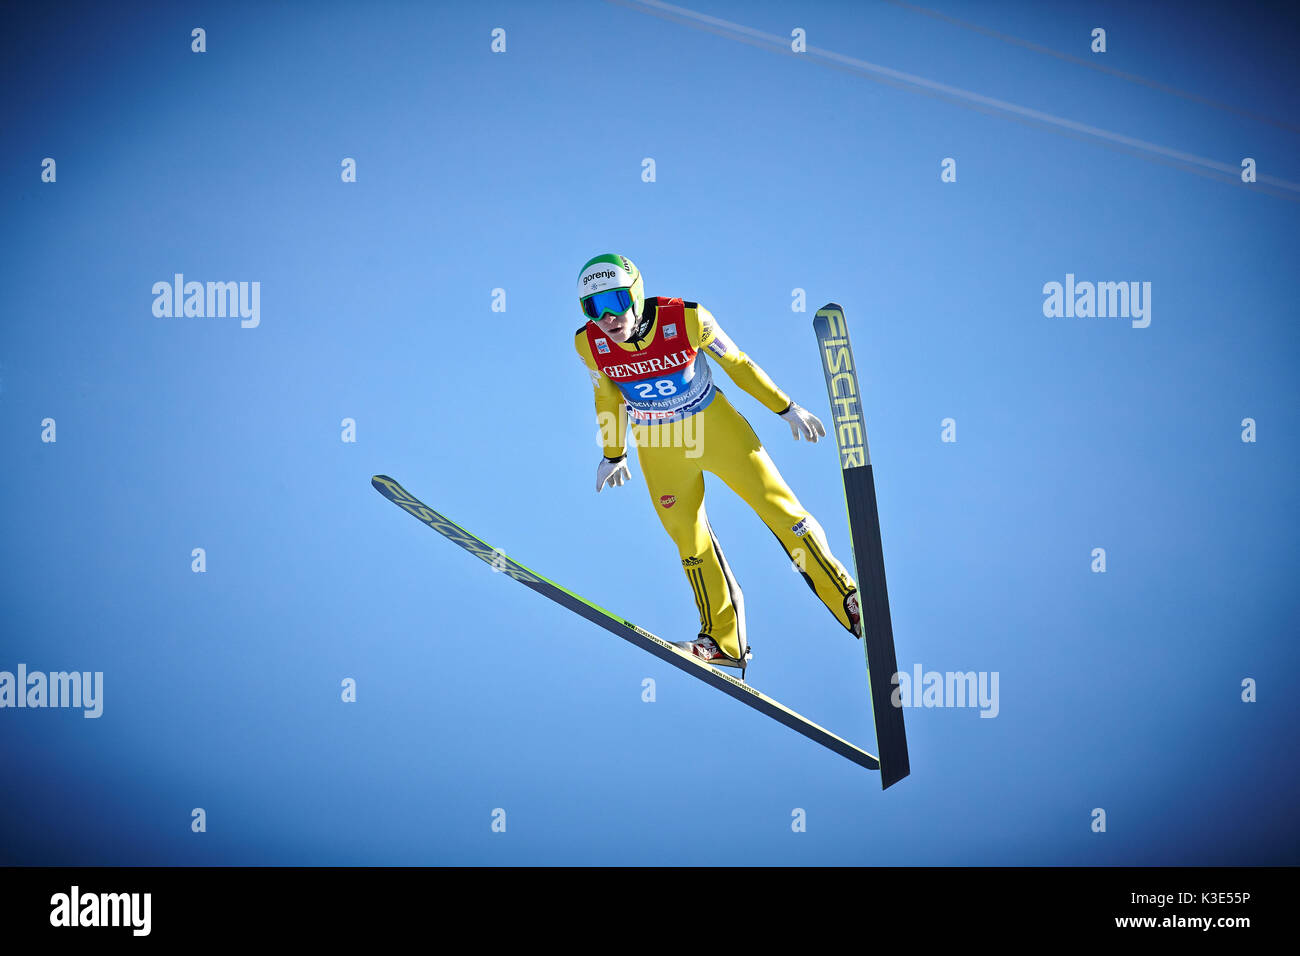 Dans le vol à ski en face de ciel bleu Banque D'Images